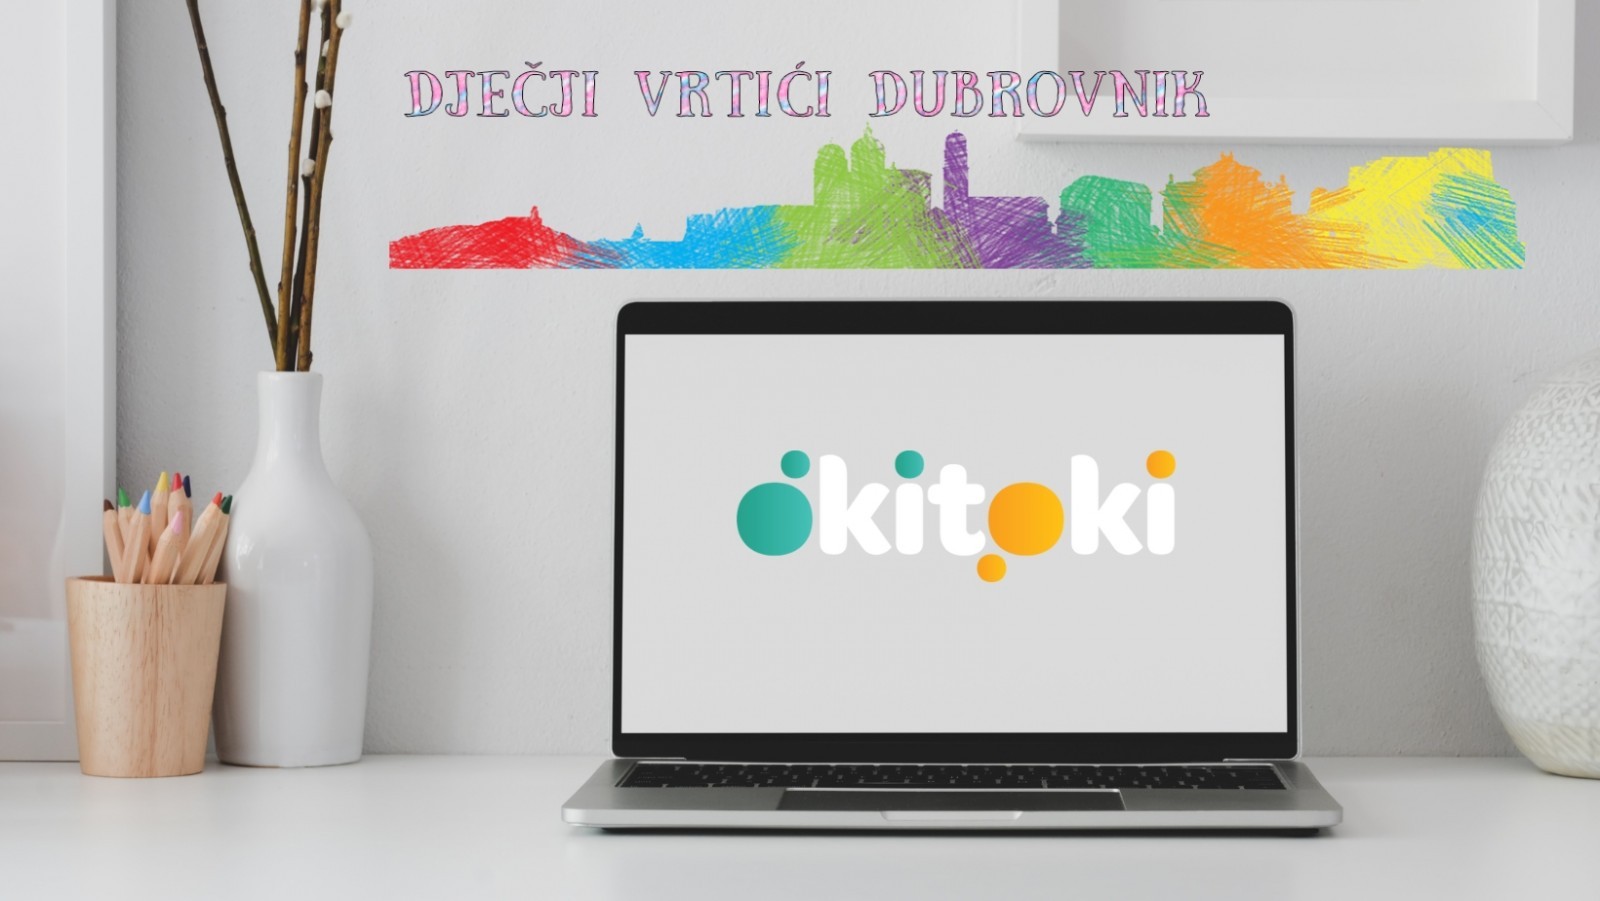 Dječji vrtići Dubrovnik ulaze u digitalnu platformu Okitoki za lakšu i sigurnu komunikaciju s roditeljima